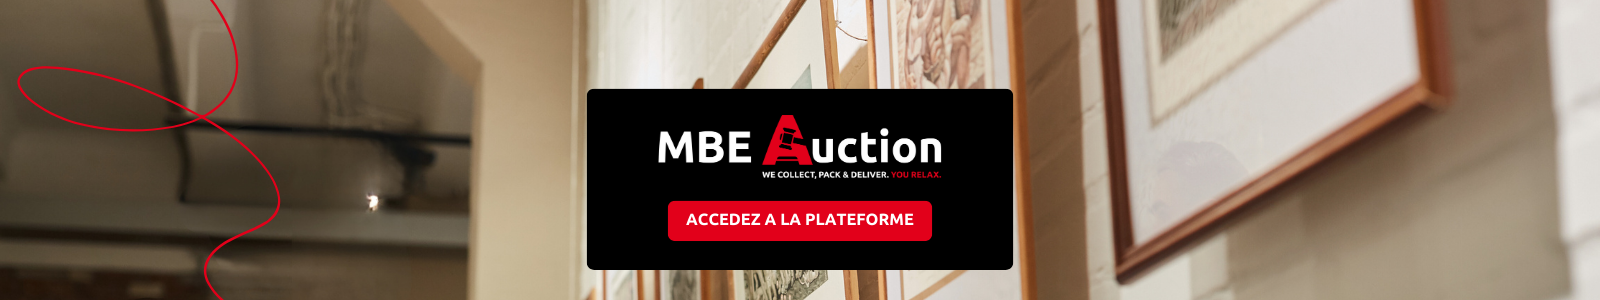 Accédez à MBE Auction !